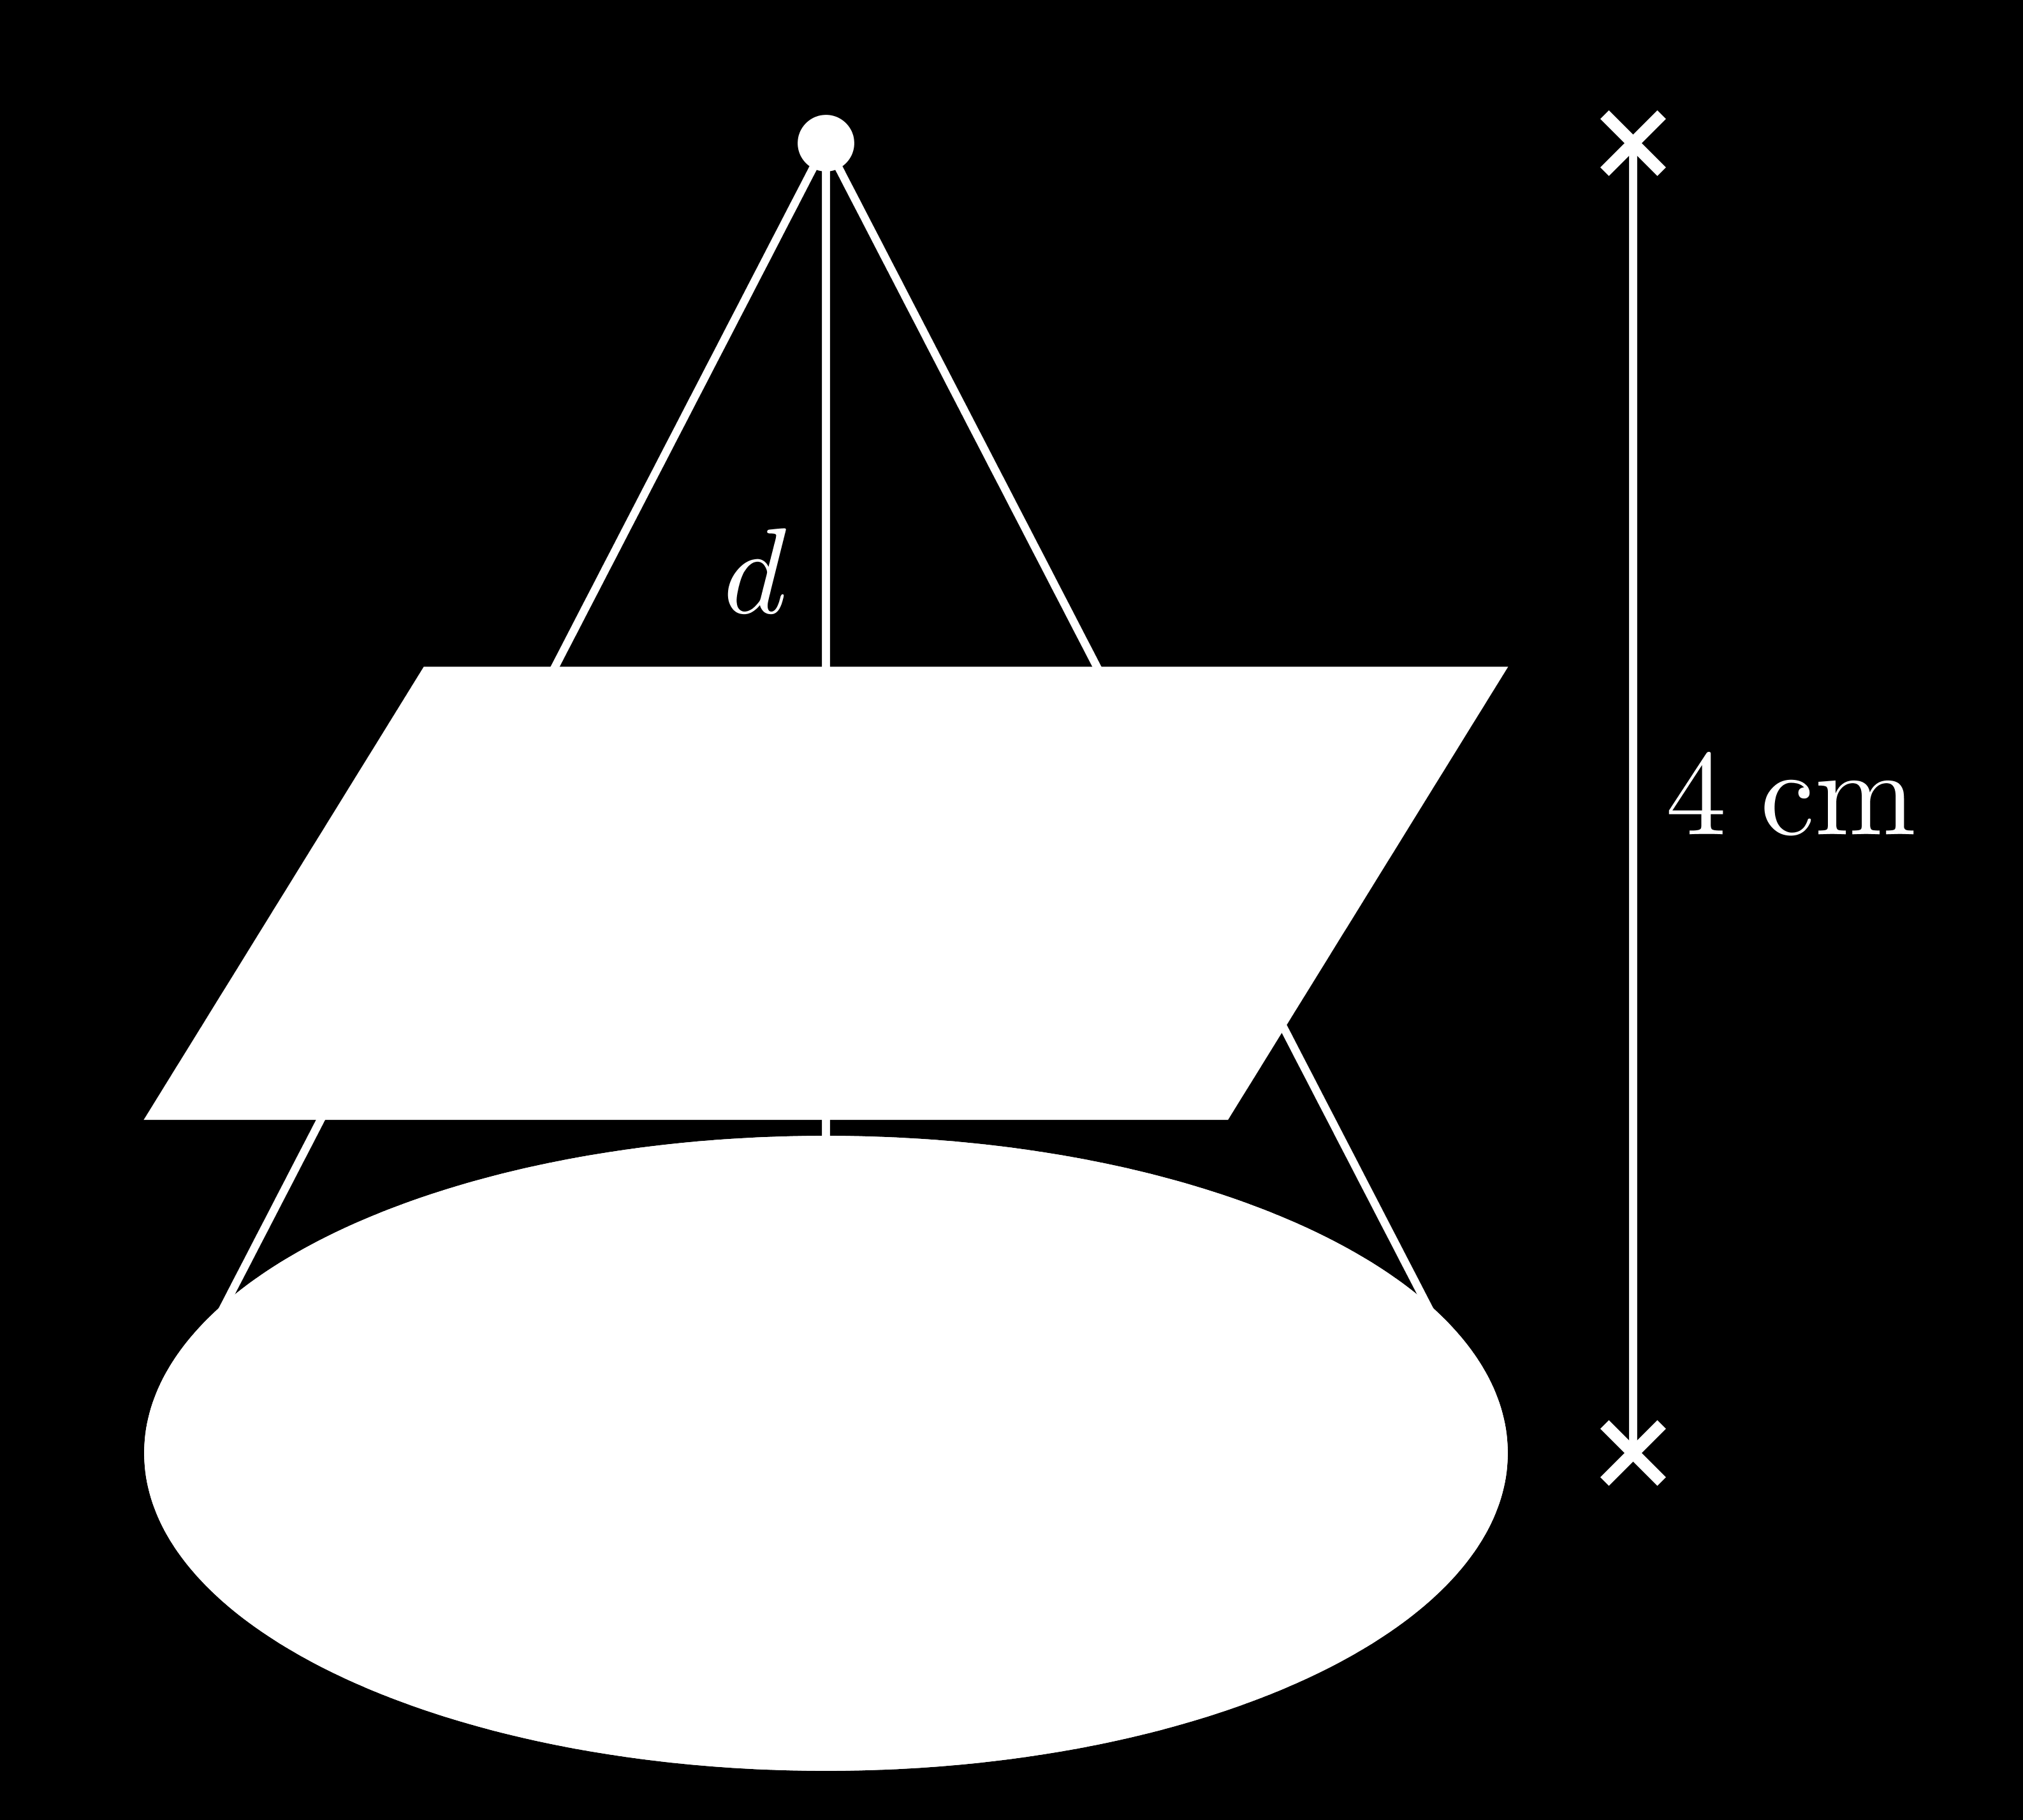 Solução Sejam v o volume do cone pequeno, V o volume do cone grande e V t o volume do tronco do cone. Observe que o cone pequeno unido ao tronco de cone completam o cone grande, logo Queremos v = V t.